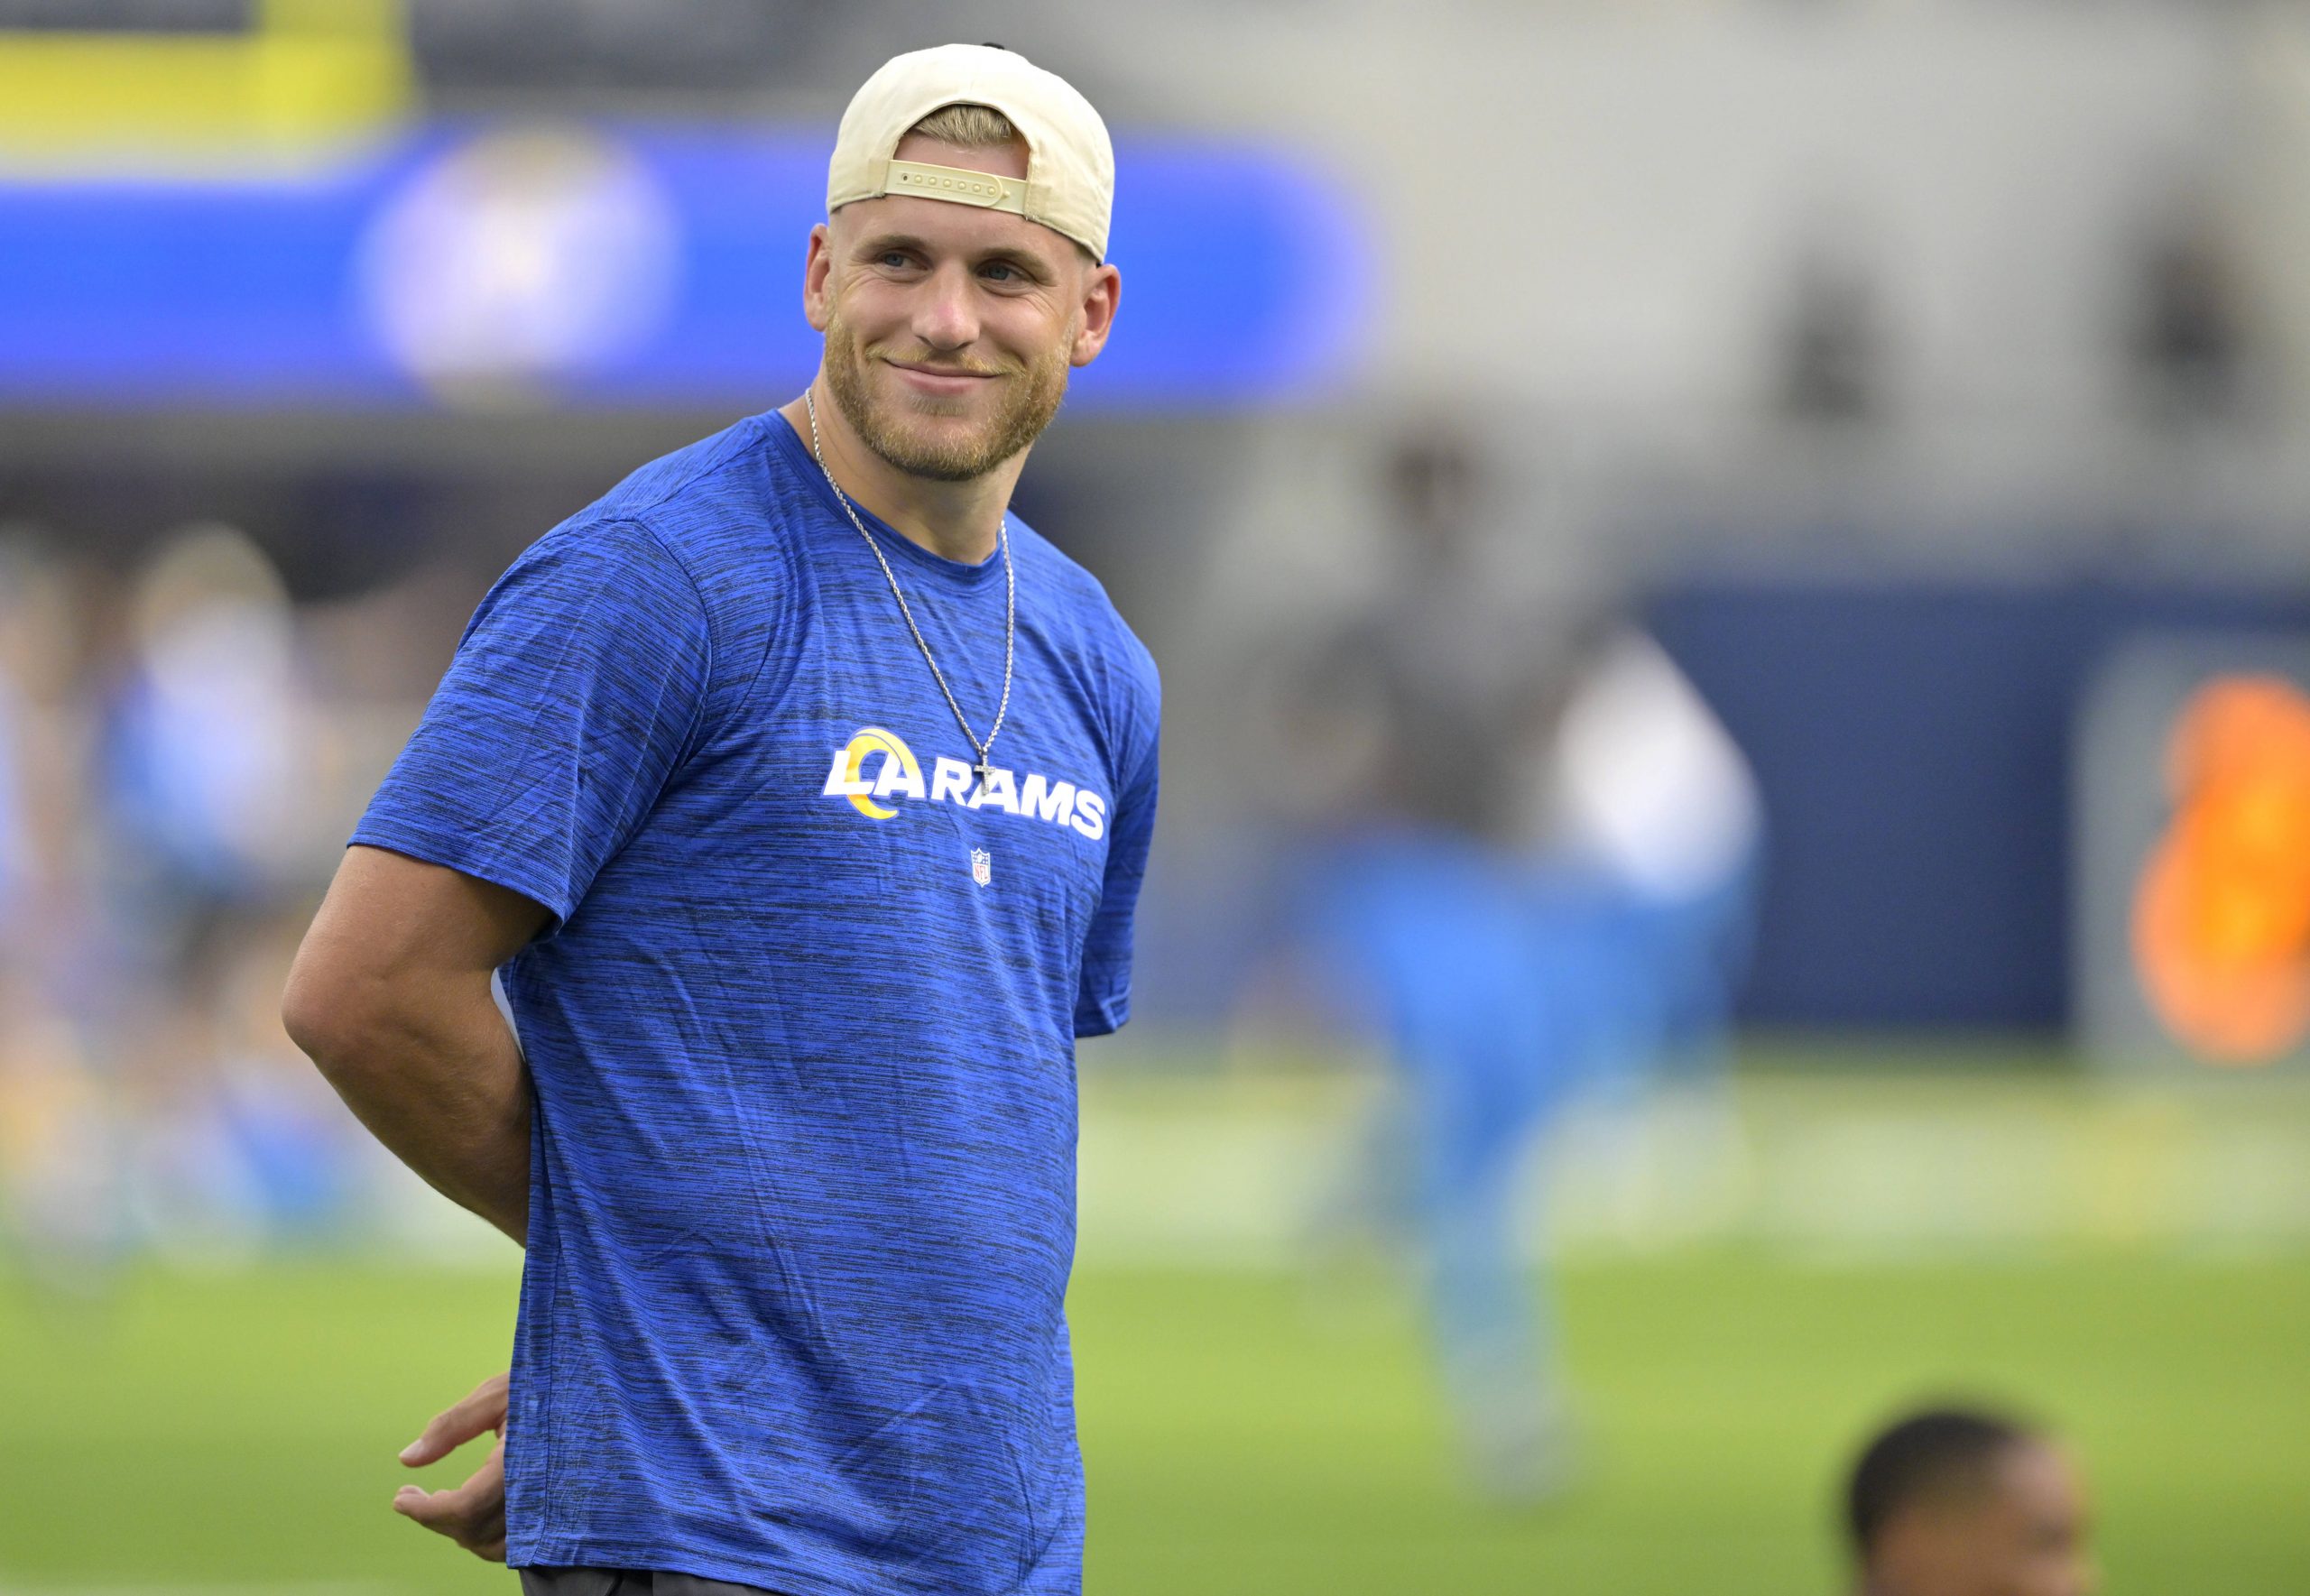 FootballR - NFL - Ein Mann in einem blauen Hemd (Cooper Kupp) steht auf einem Fitnessfeld.